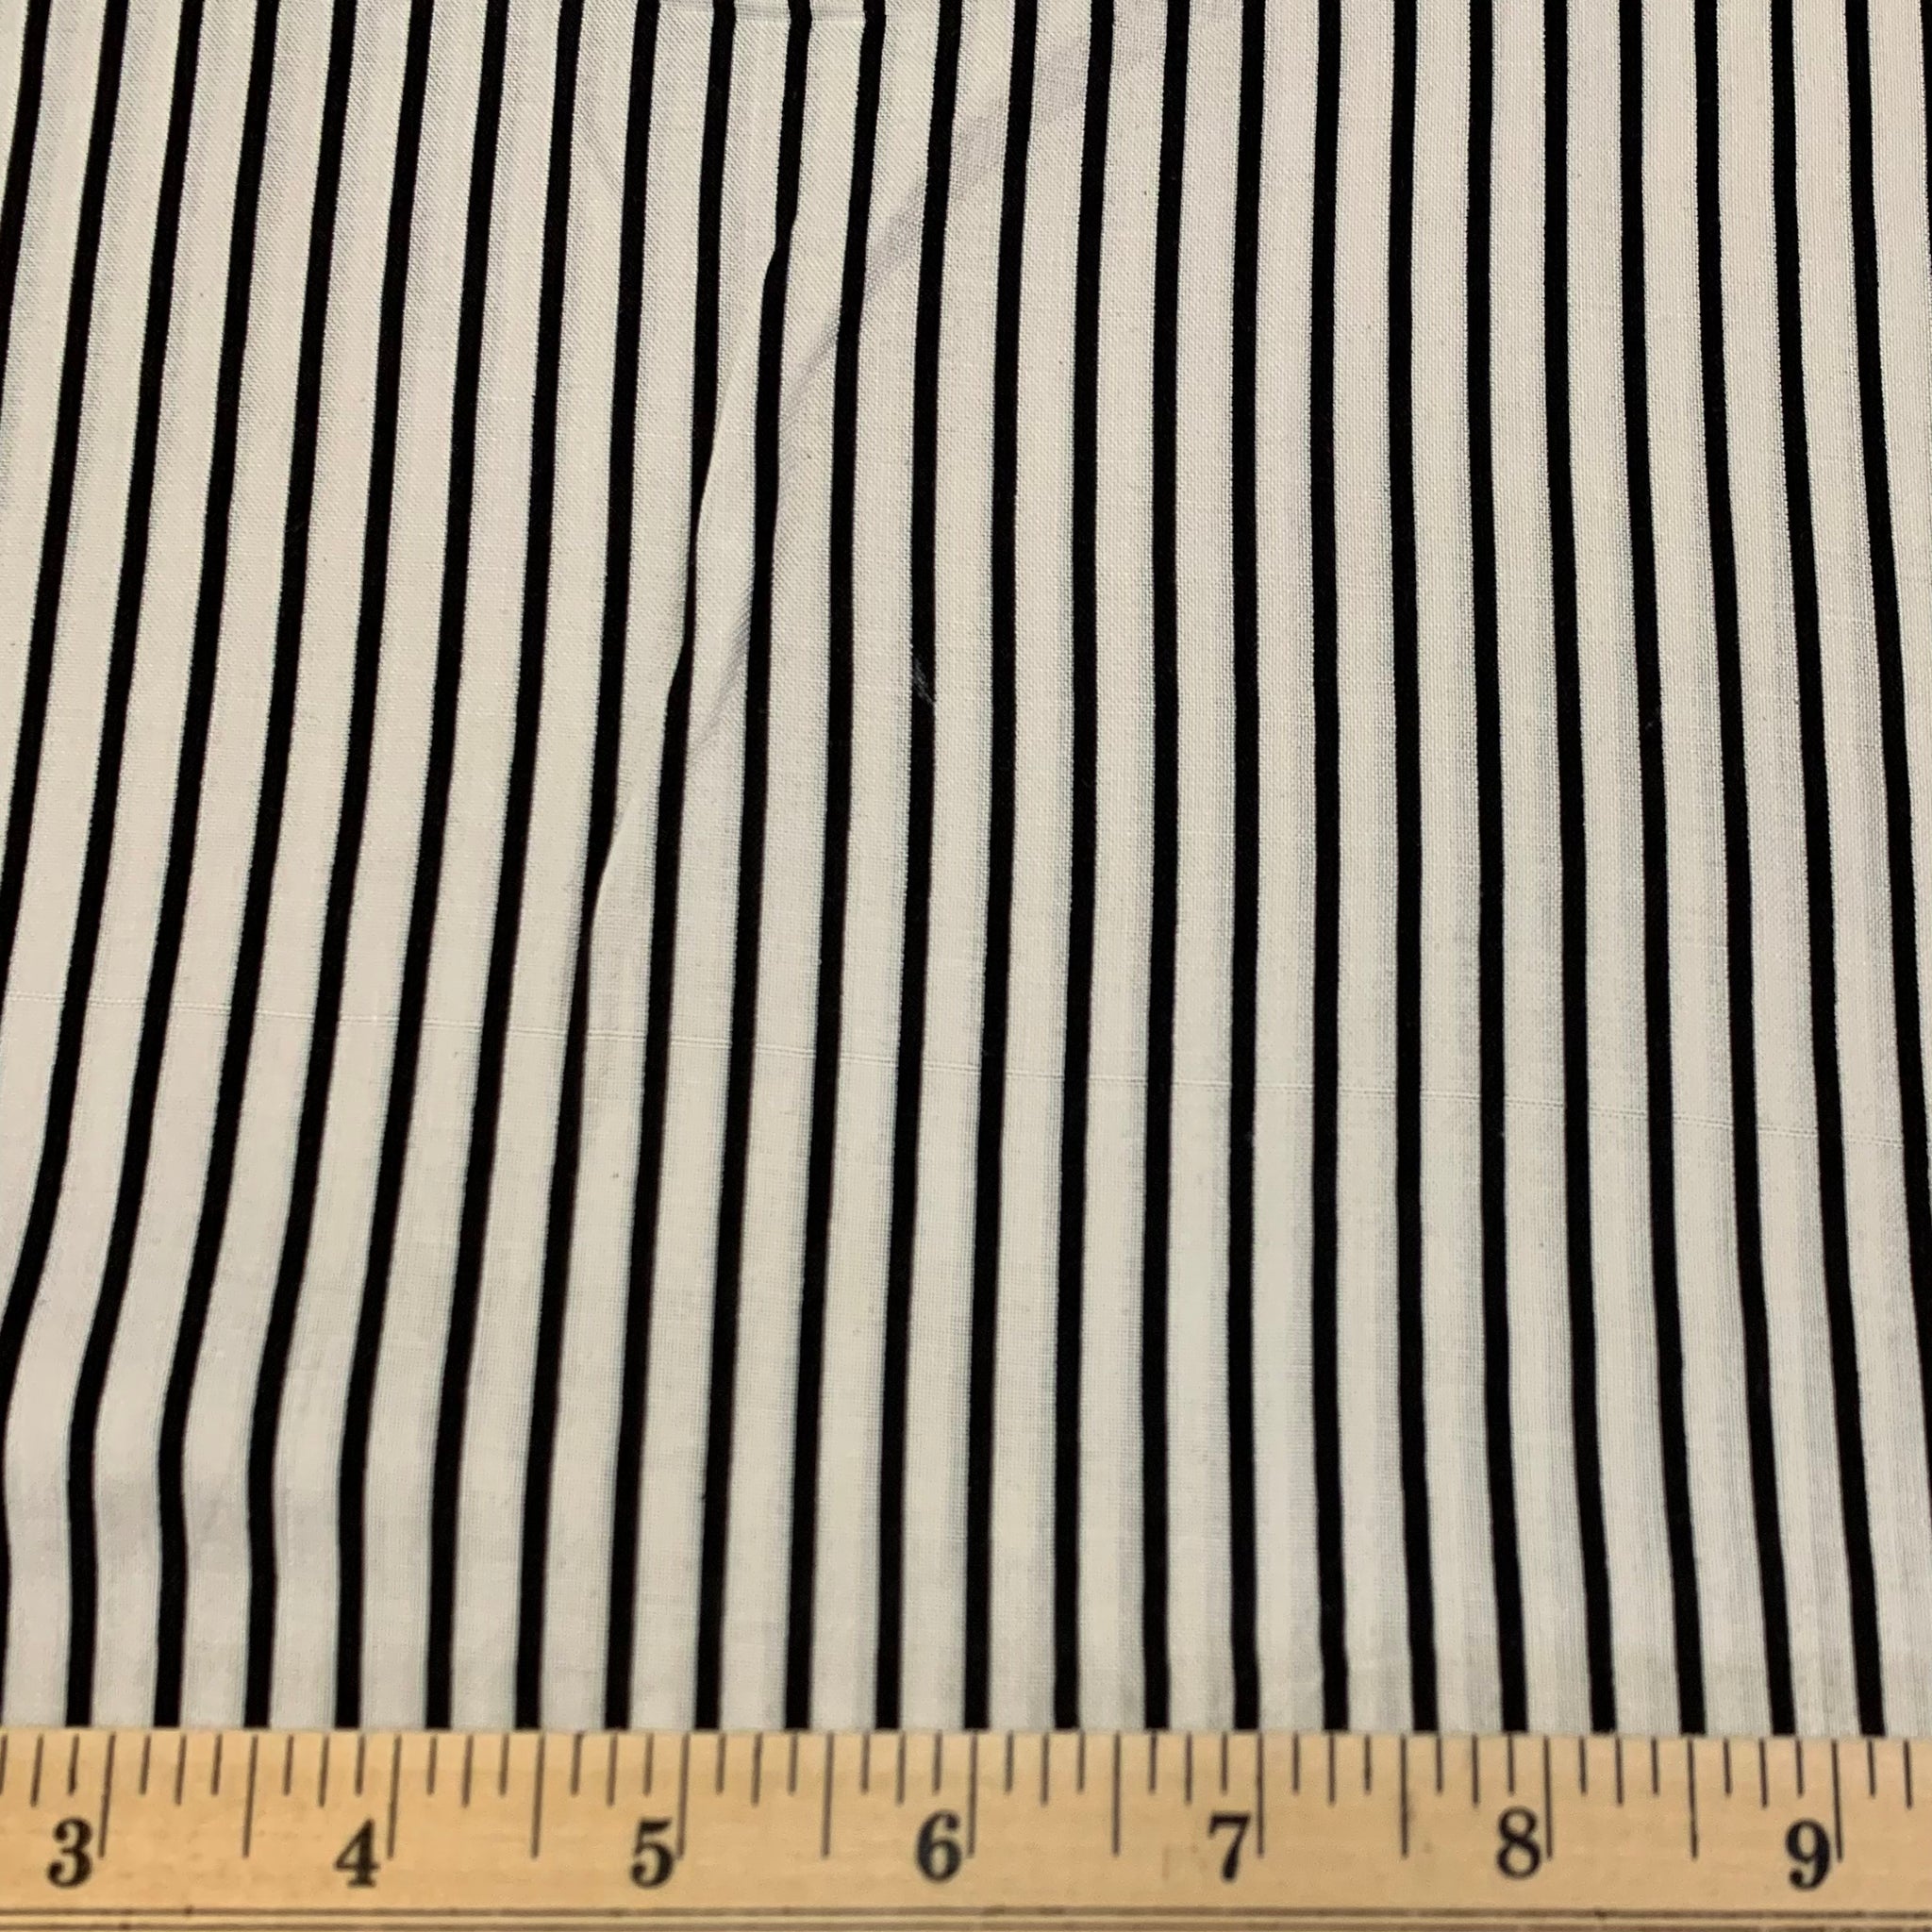 Pin Stripe Rayon Challis - Black and White